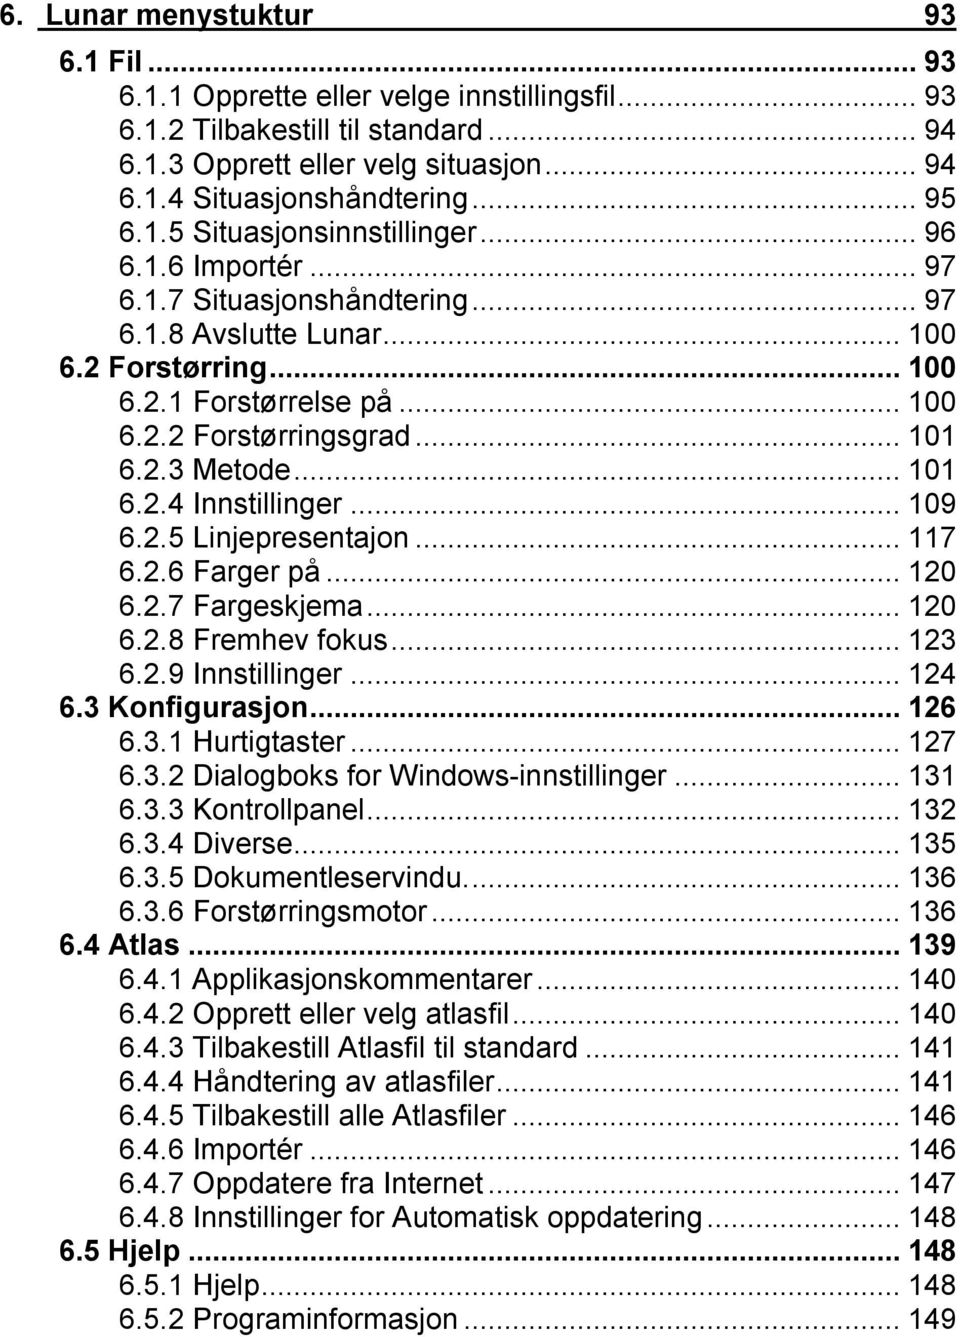 ..109 6.2.5 Linjepresentajon...117 6.2.6 Farger på...120 6.2.7 Fargeskjema...120 6.2.8 Fremhev fokus...123 6.2.9 Innstillinger...124 6.3 Konfigurasjon...126 6.3.1 Hurtigtaster...127 6.3.2 Dialogboks for Windows-innstillinger.